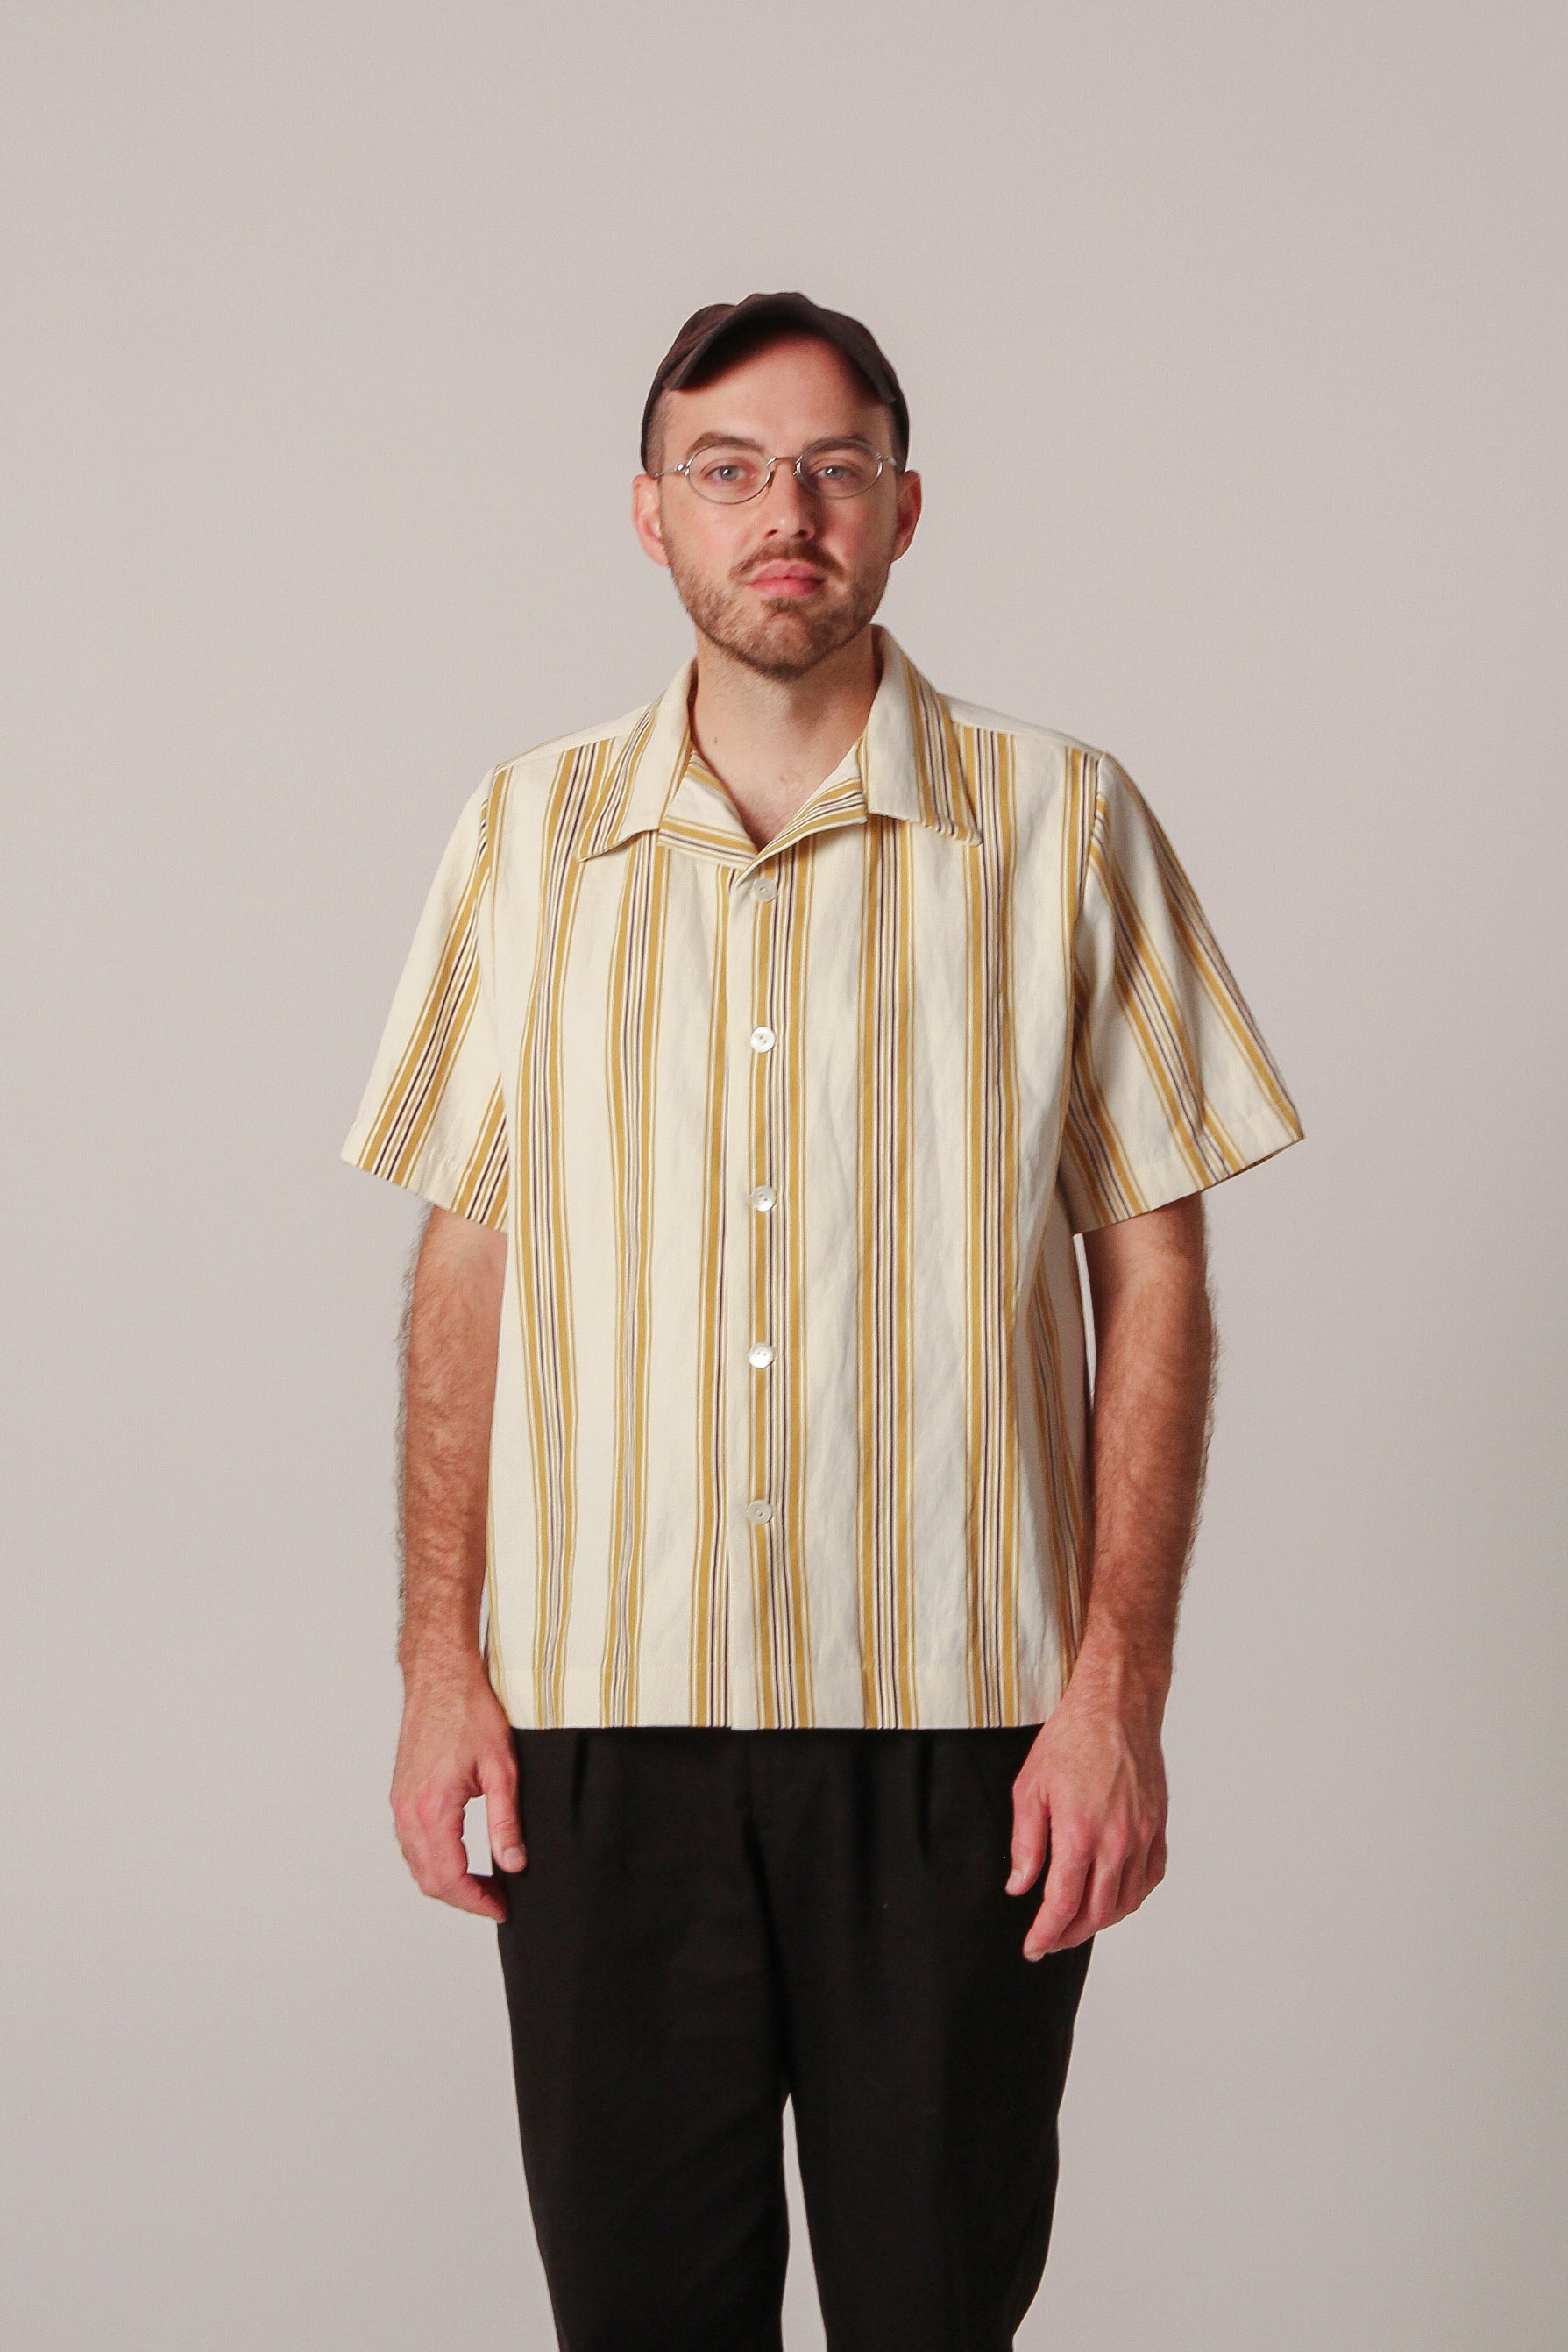 Classica Shirt - Porch Stripe